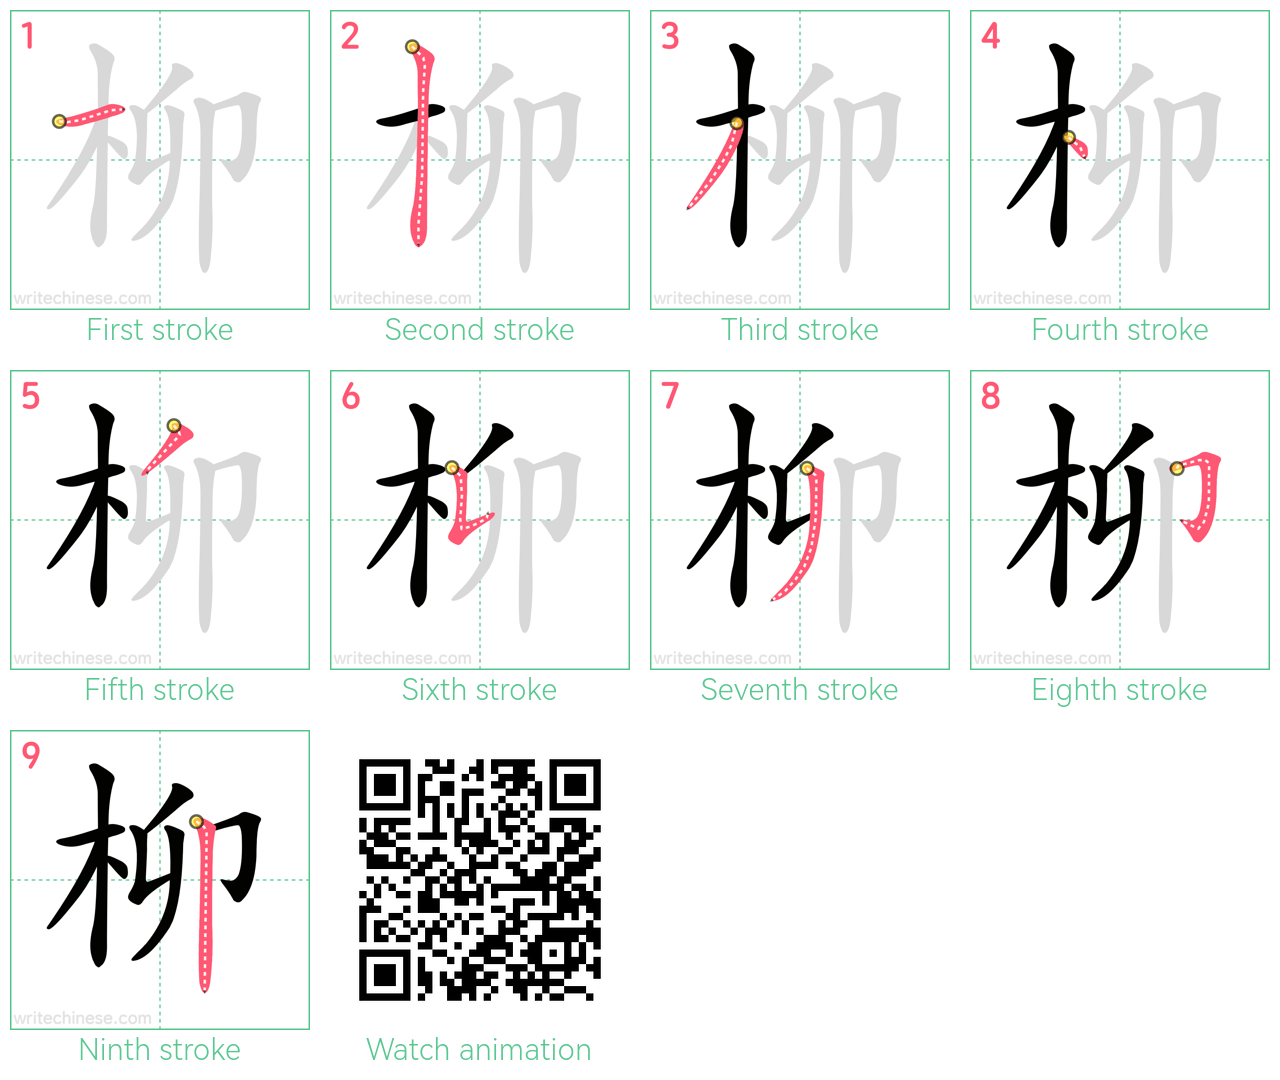 柳 step-by-step stroke order diagrams